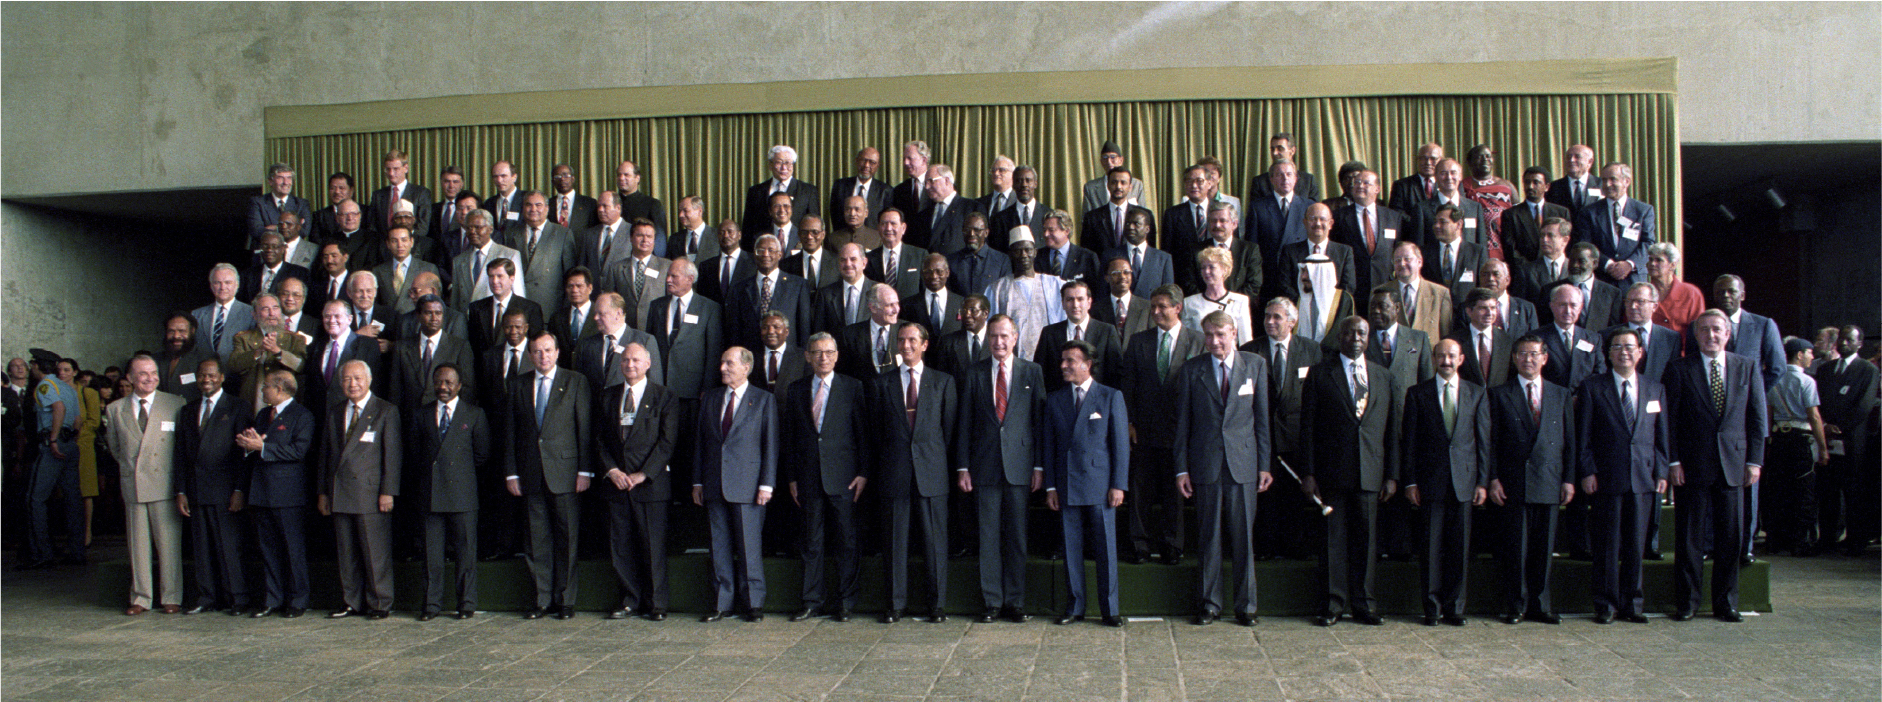 Foto de grupo de líderes mundiales reunidos en la 'Cumbre de la Tierra'.